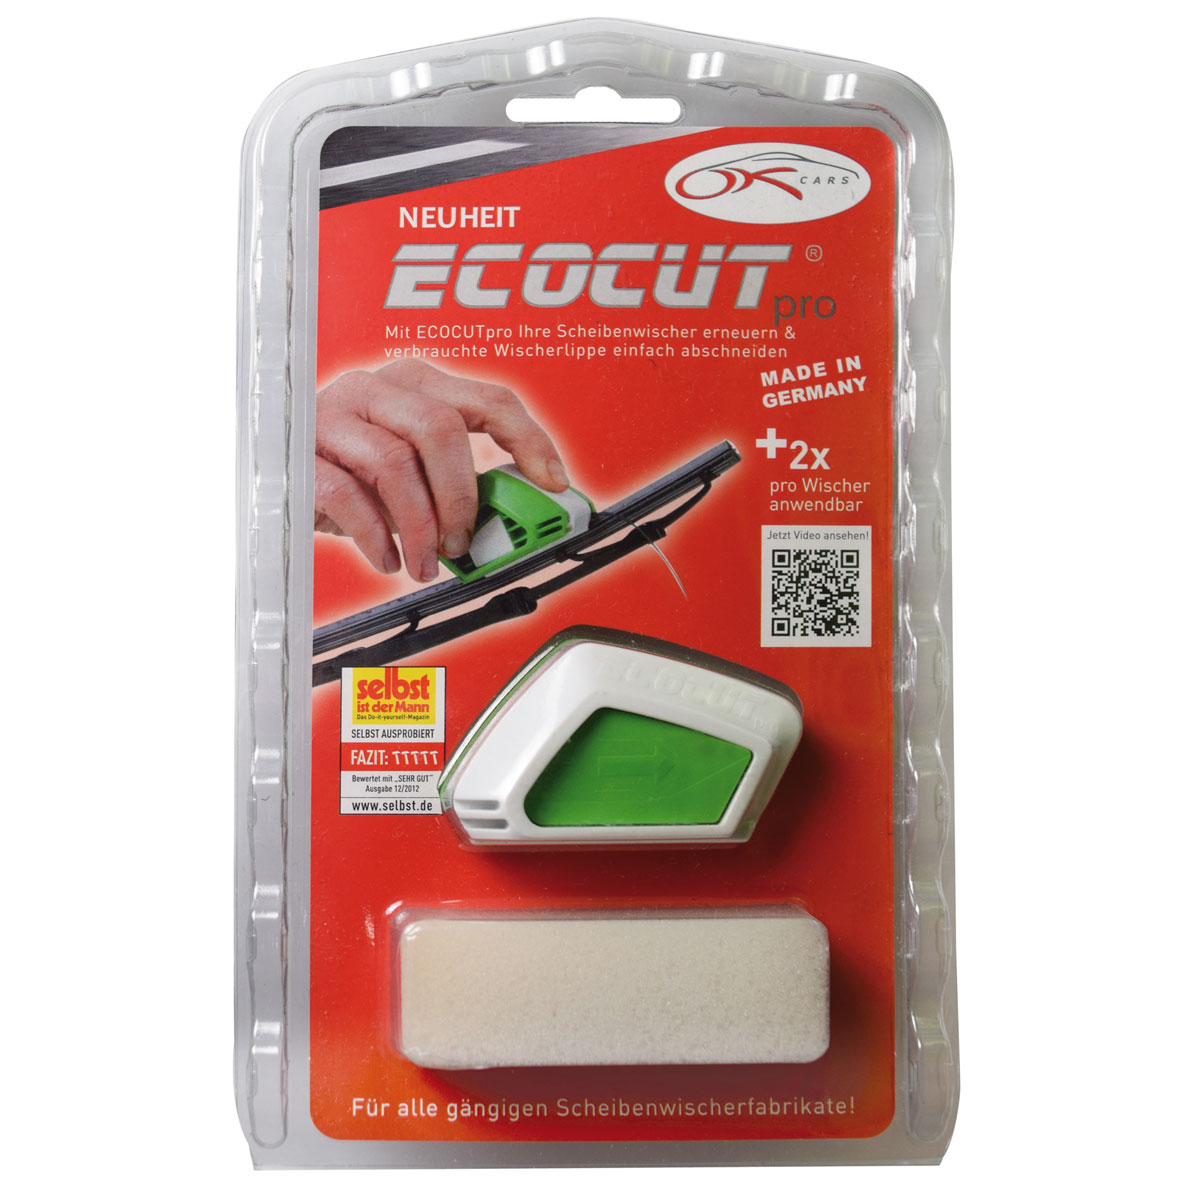 Scheibenwischerschneider „Ecocut Pro“